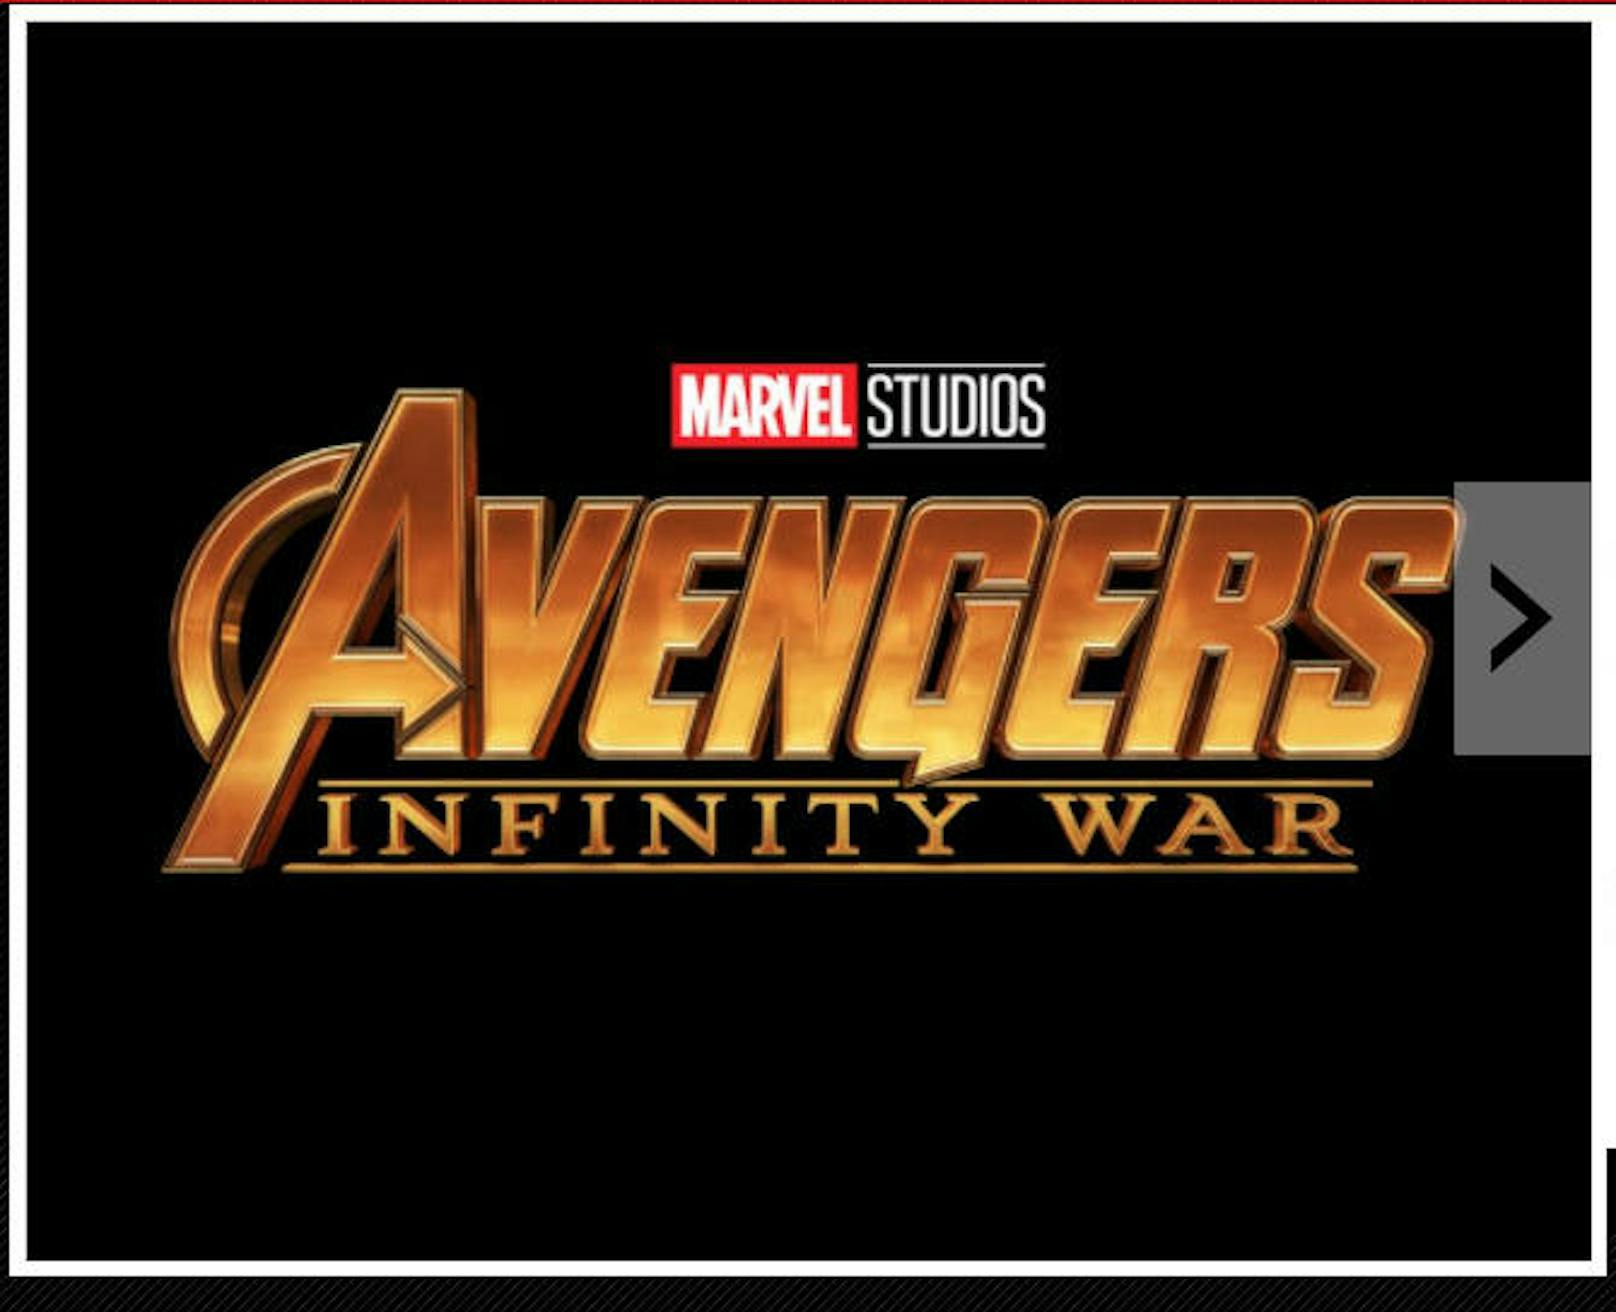 Marvels Ankündigung für "Infinity War"